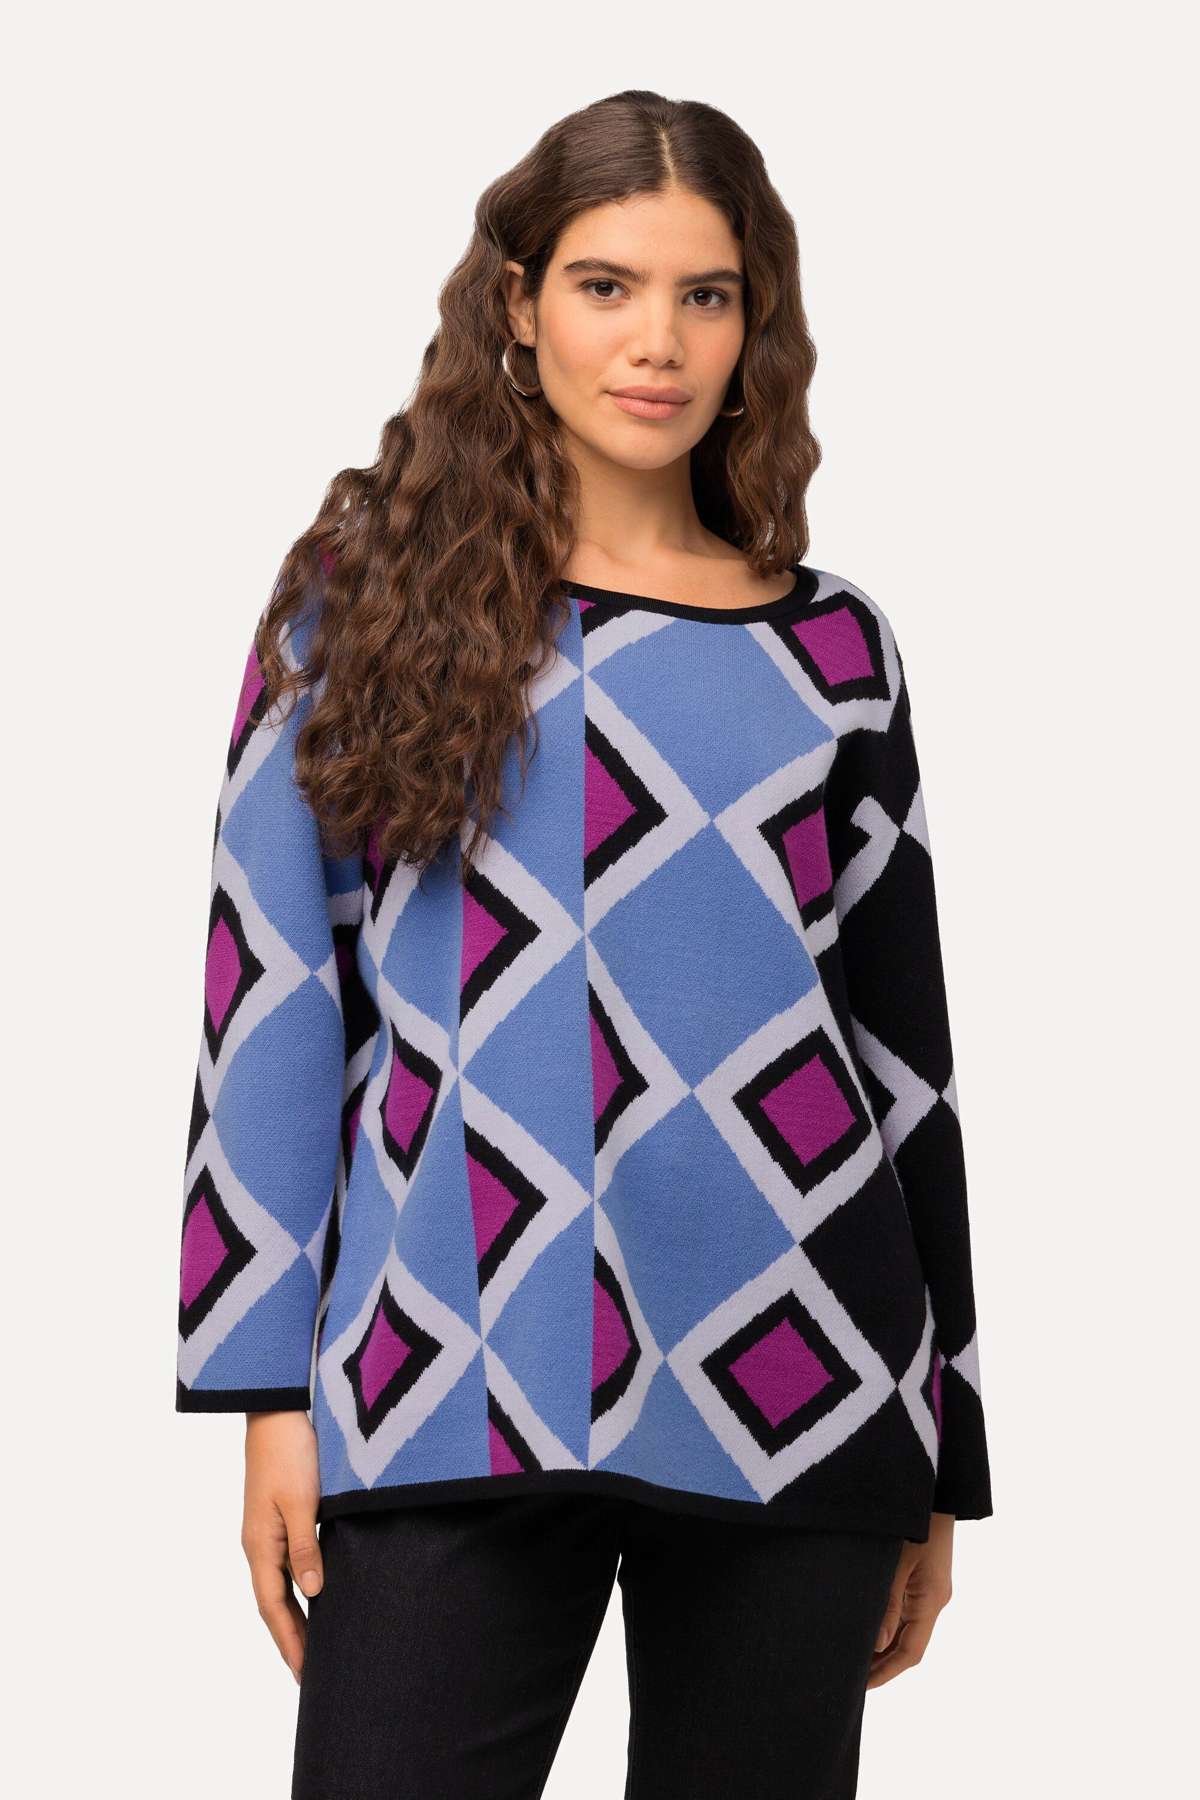 Вязаный свитер пуловер с узором микс-лодочка с длинным рукавом